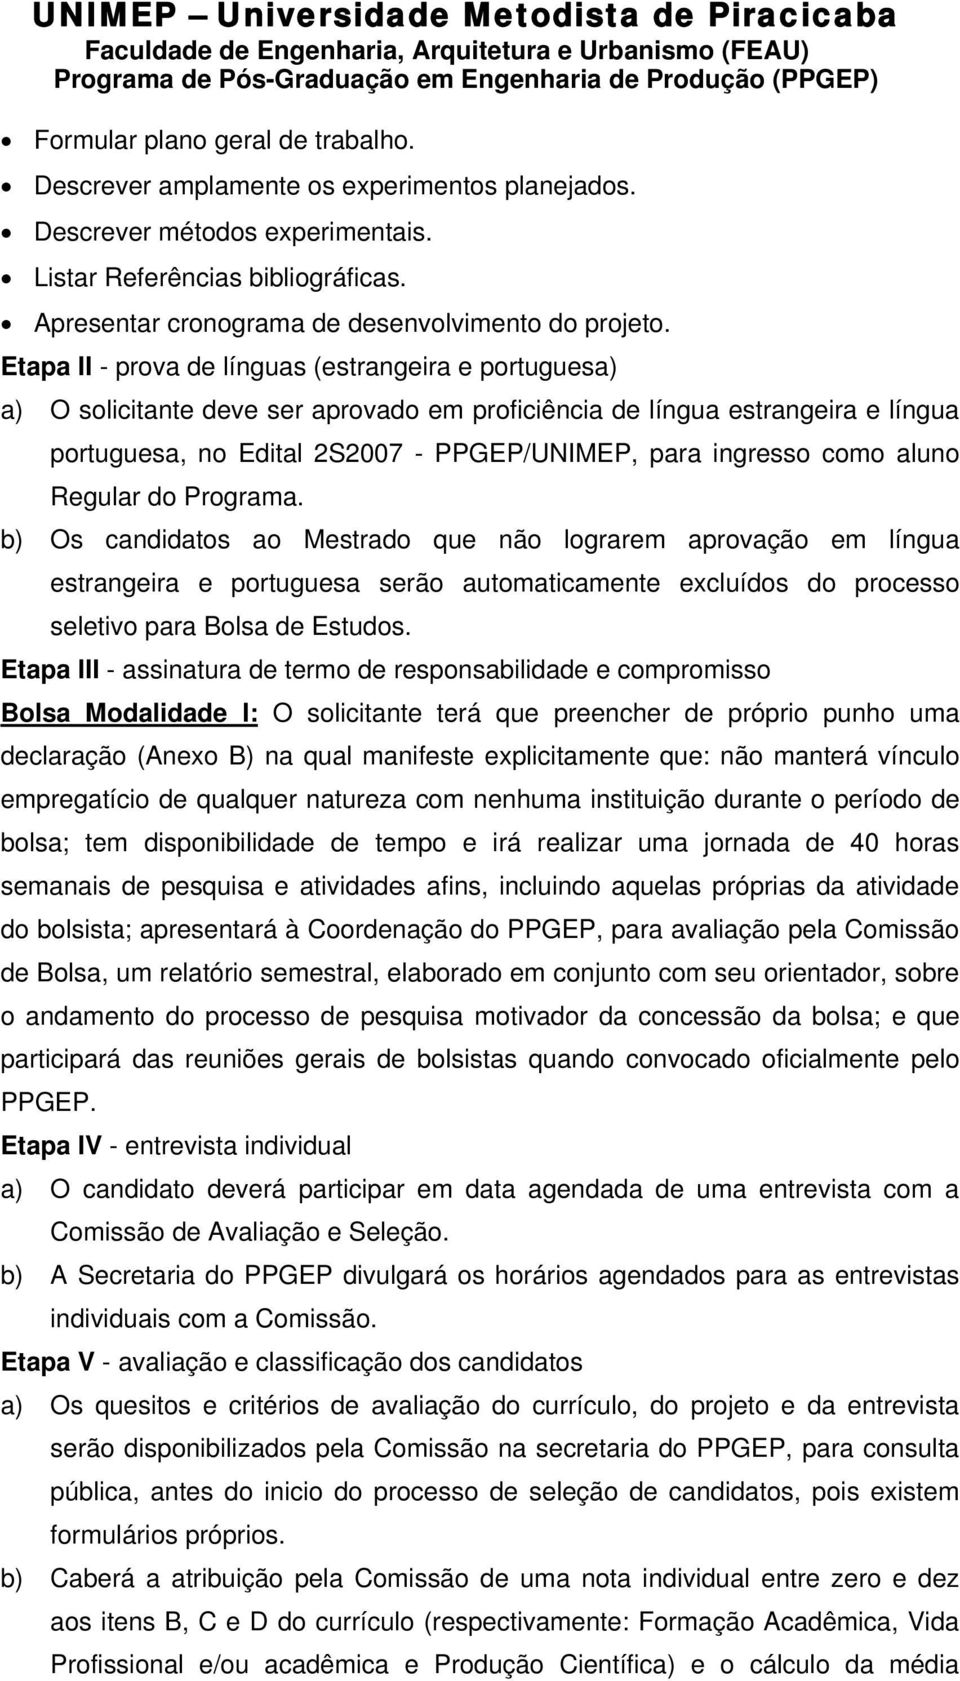 Etapa II - prova de línguas (estrangeira e portuguesa) a) O solicitante deve ser aprovado em proficiência de língua estrangeira e língua portuguesa, no Edital 2S2007 - PPGEP/UNIMEP, para ingresso